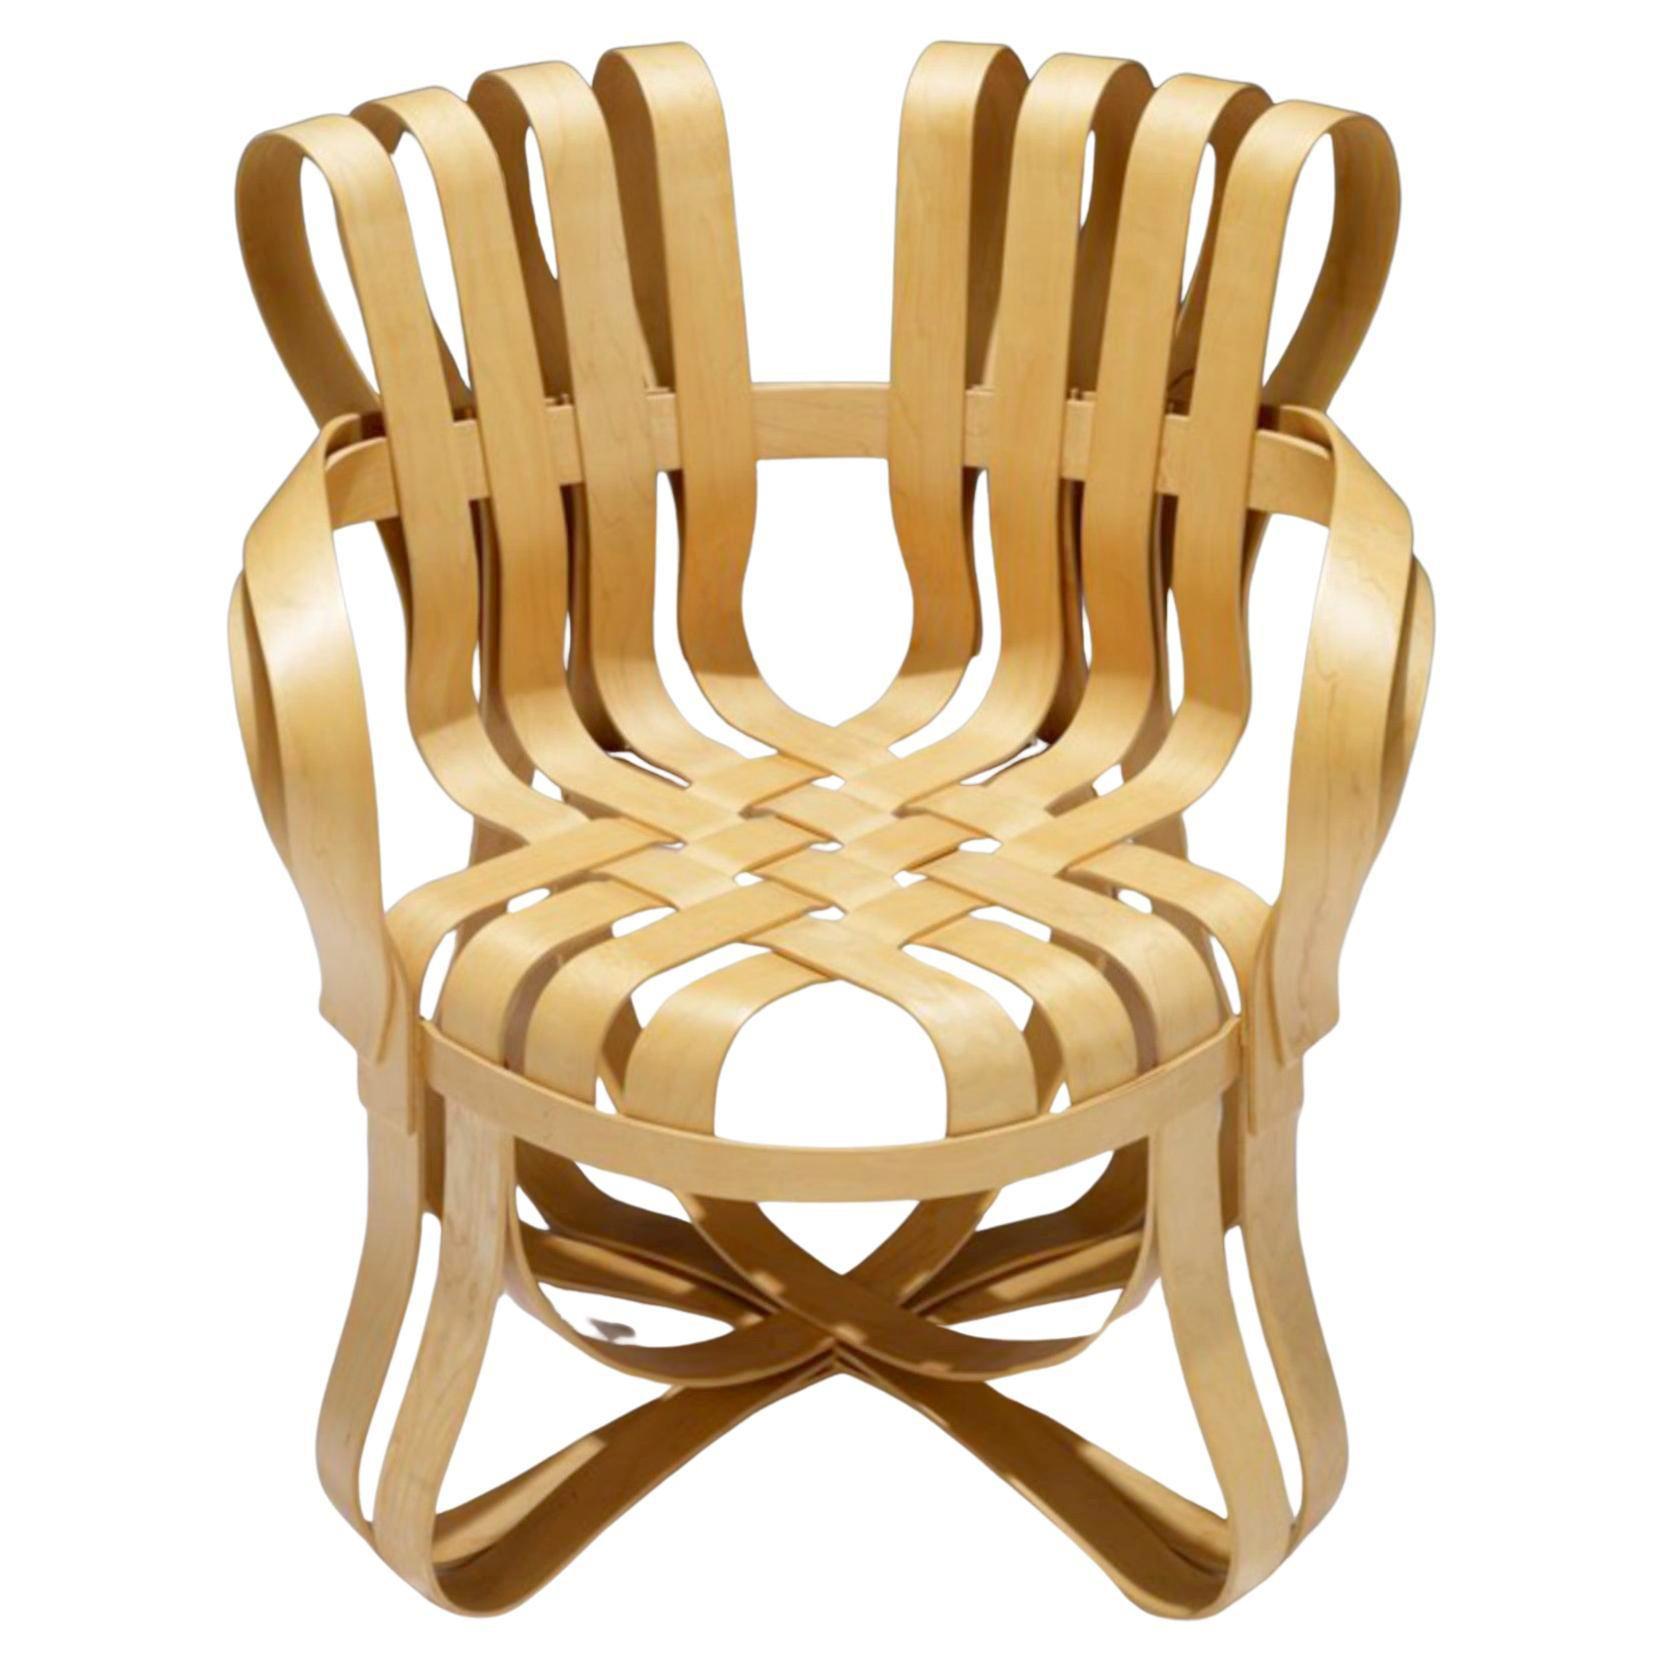 Inspiriert von den Apfelkisten, auf denen er als Kind gespielt hatte, entwarf der mit dem Pritzker-Preis ausgezeichnete Architekt Frank Gehry das bandartige Design des Cross Check Stuhls mit ineinander verwobenen Ahornstreifen. 
Das anmutige Design